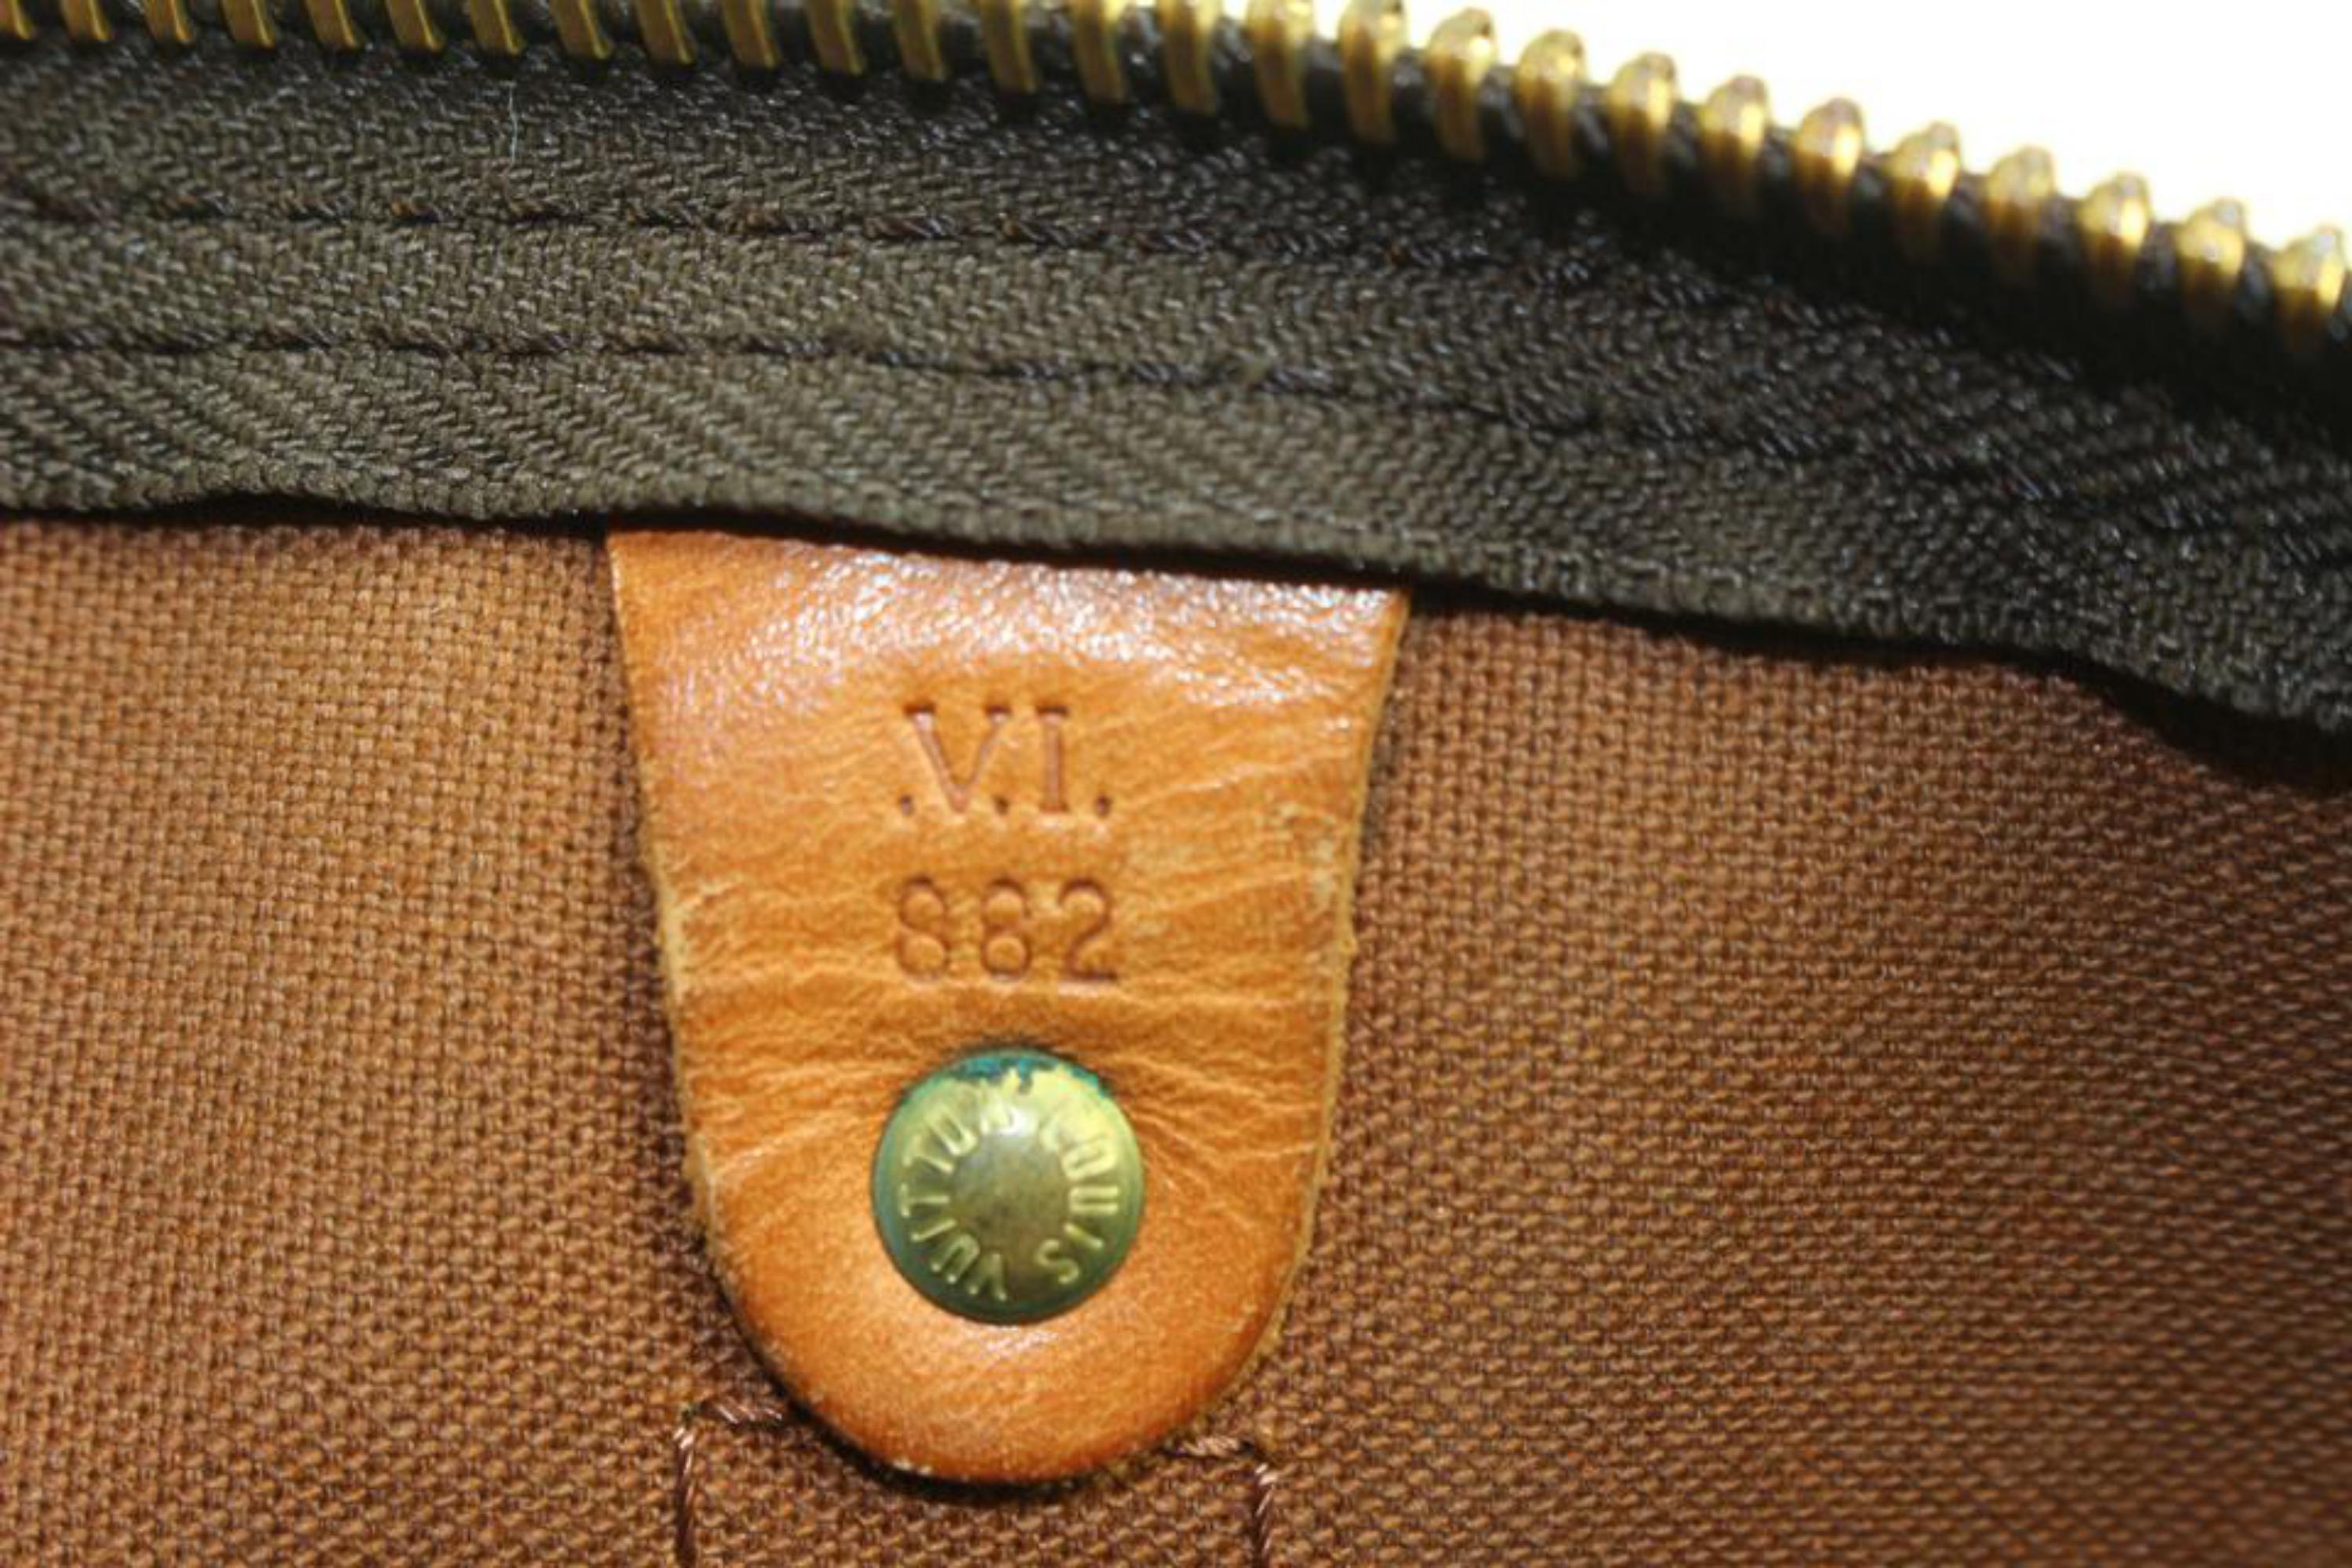 Louis Vuitton Keepall Bandouliere 55 Boston Duffle Bag 81lz422s
Code de date/Numéro de série : VI 882
Fabriqué en : France
Mesures : Longueur :  21.5